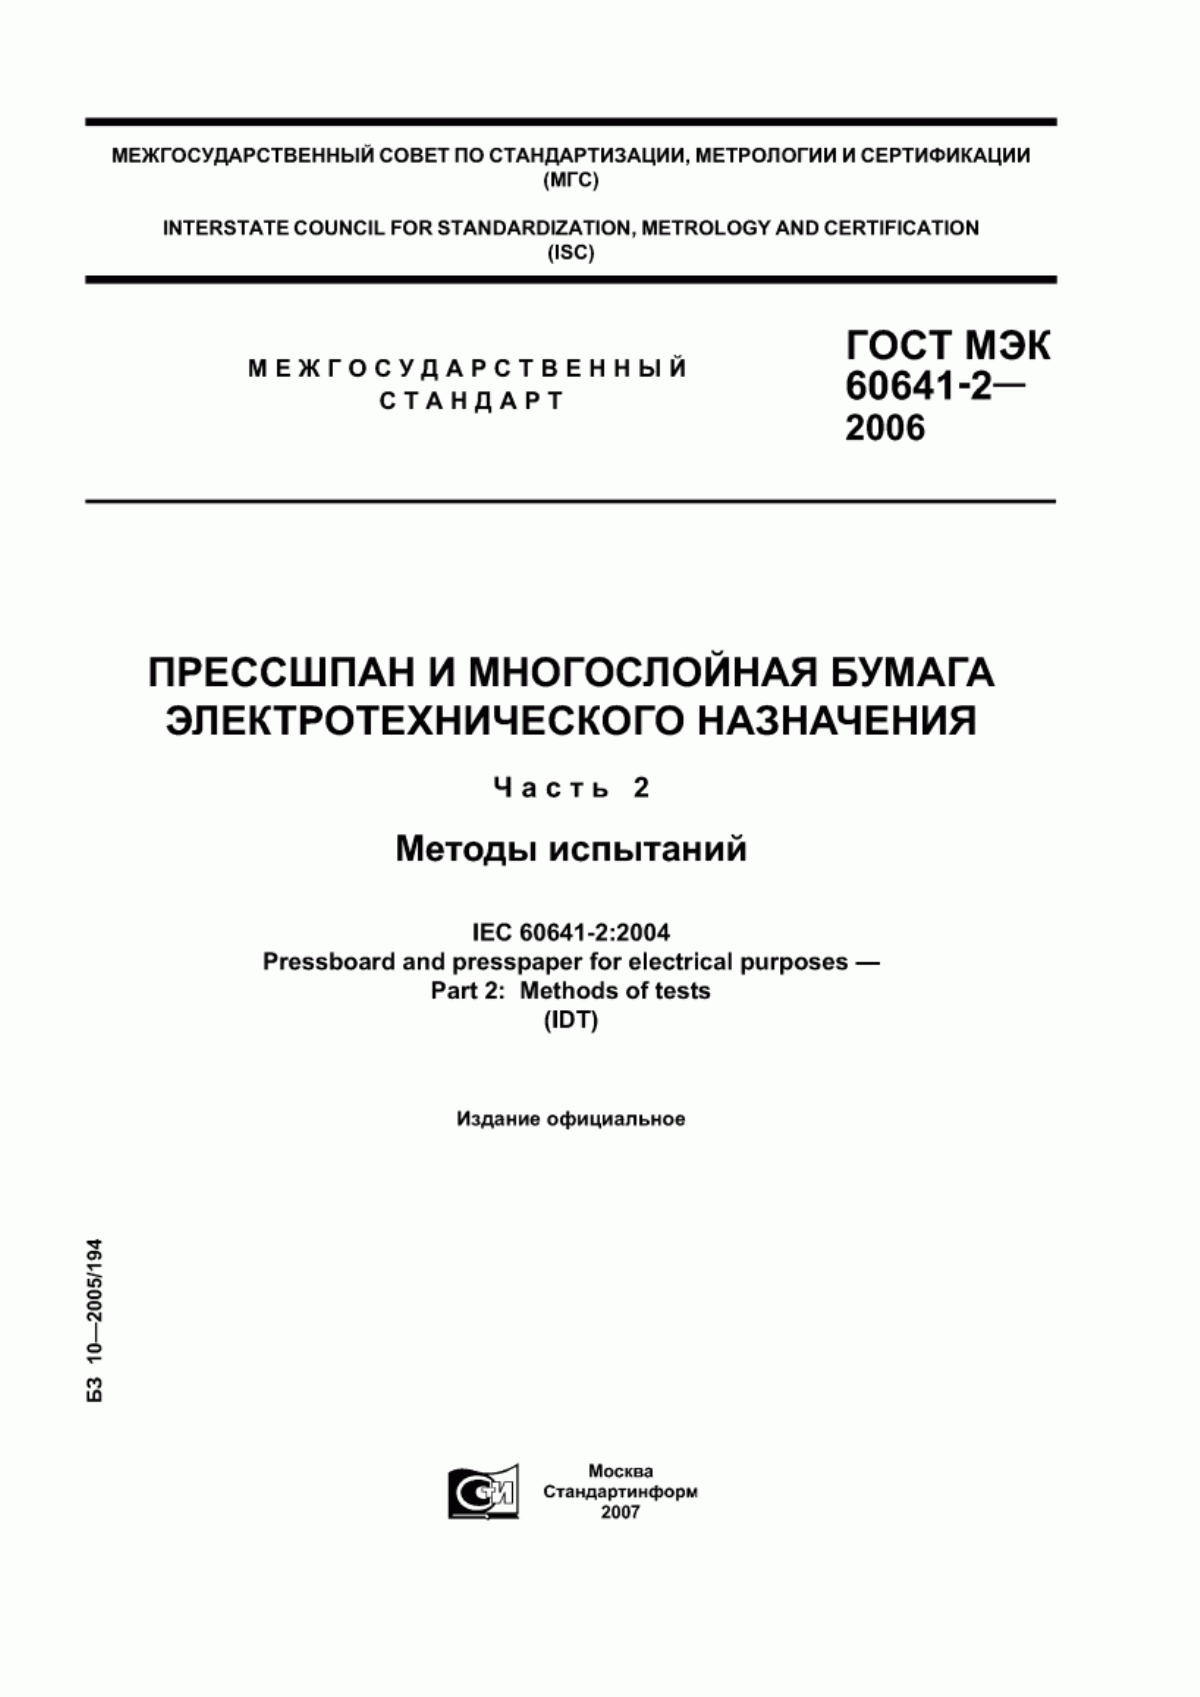 ГОСТ МЭК 60641-2-2006 Прессшпан и многослойная бумага электротехнического назначения. Часть 2. Методы испытаний